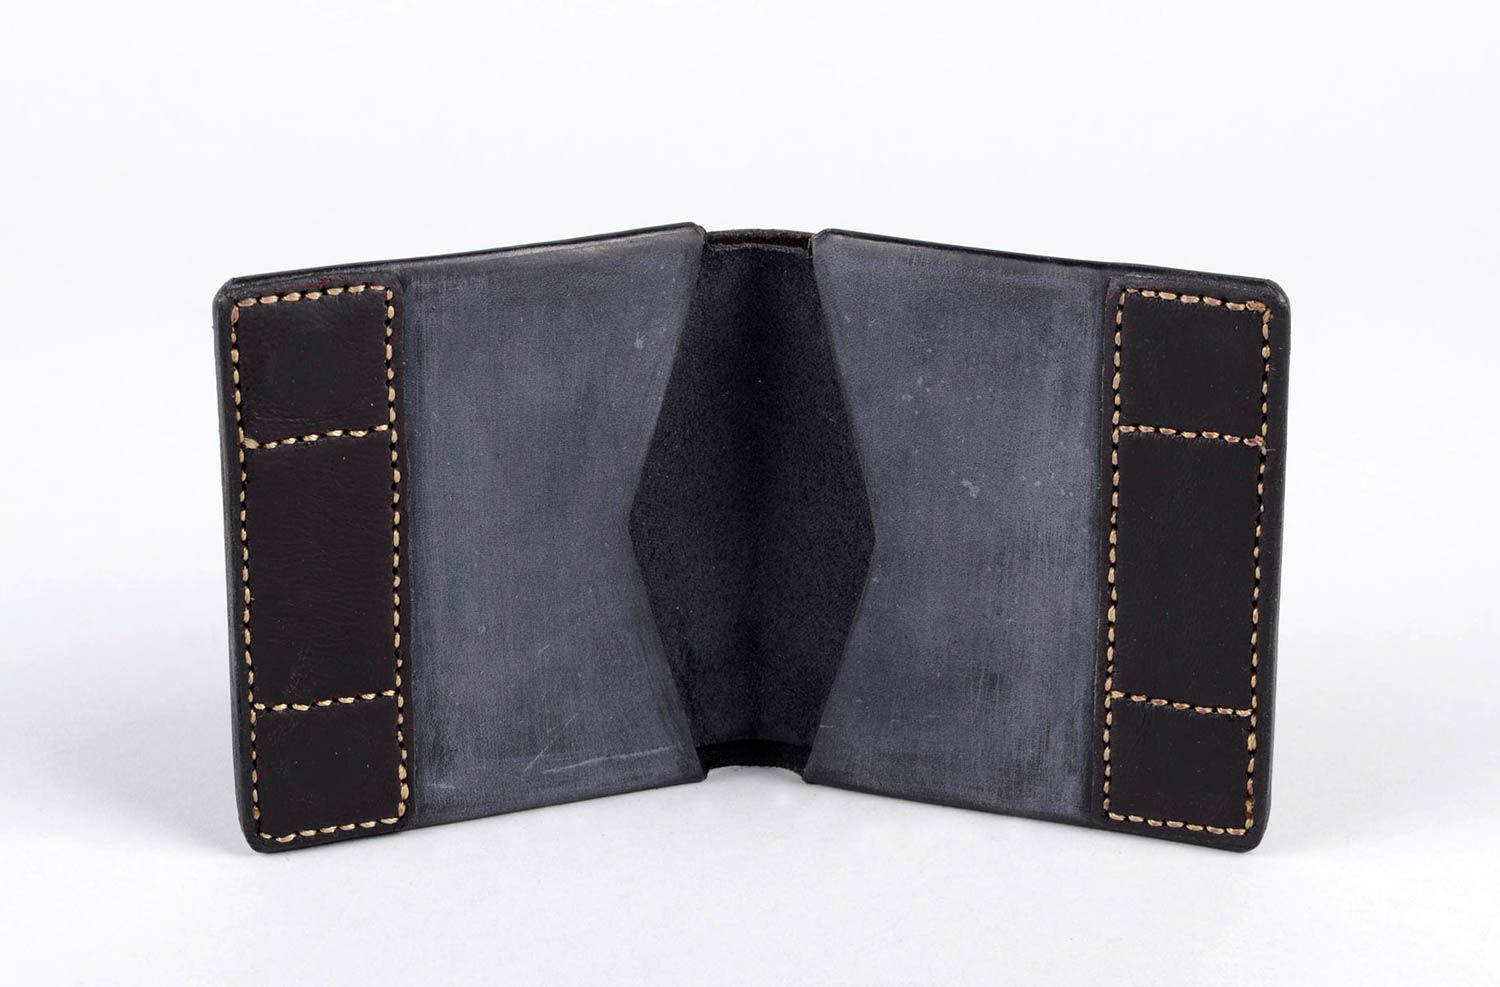 Оригинальный кошелек для мужчин хенд мейд кожаный кошелек мужское портмоне фото 4